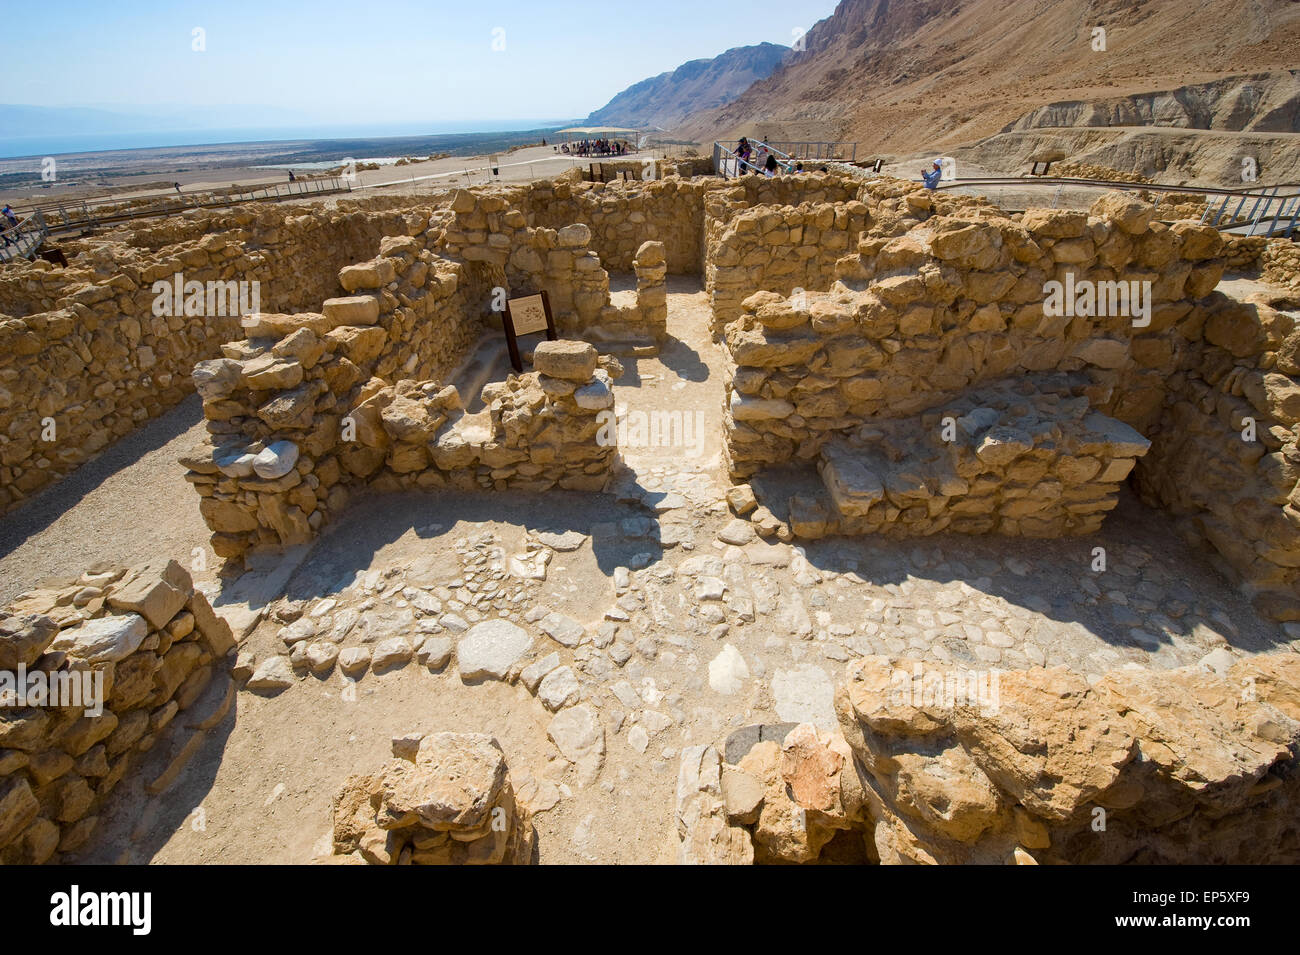 Qumrân, ISRAËL - OCT 15, 2014 : les touristes visitent les fouilles et les ruines de Qumrân en Israël près de la Mer Morte Banque D'Images